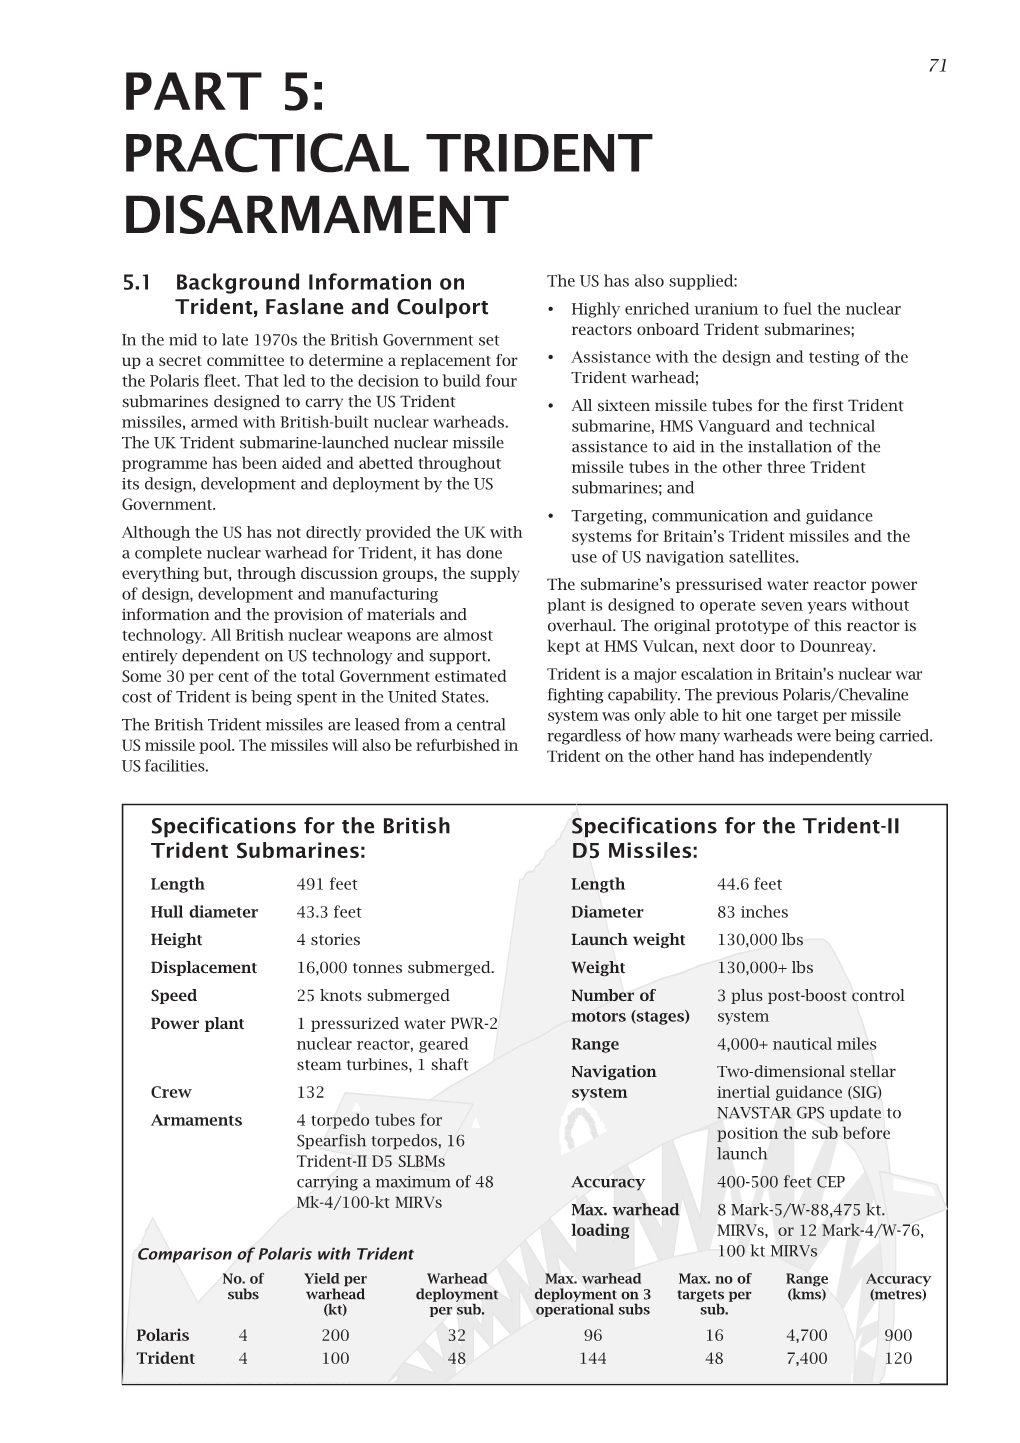 Part 5: Practical Trident Disarmament